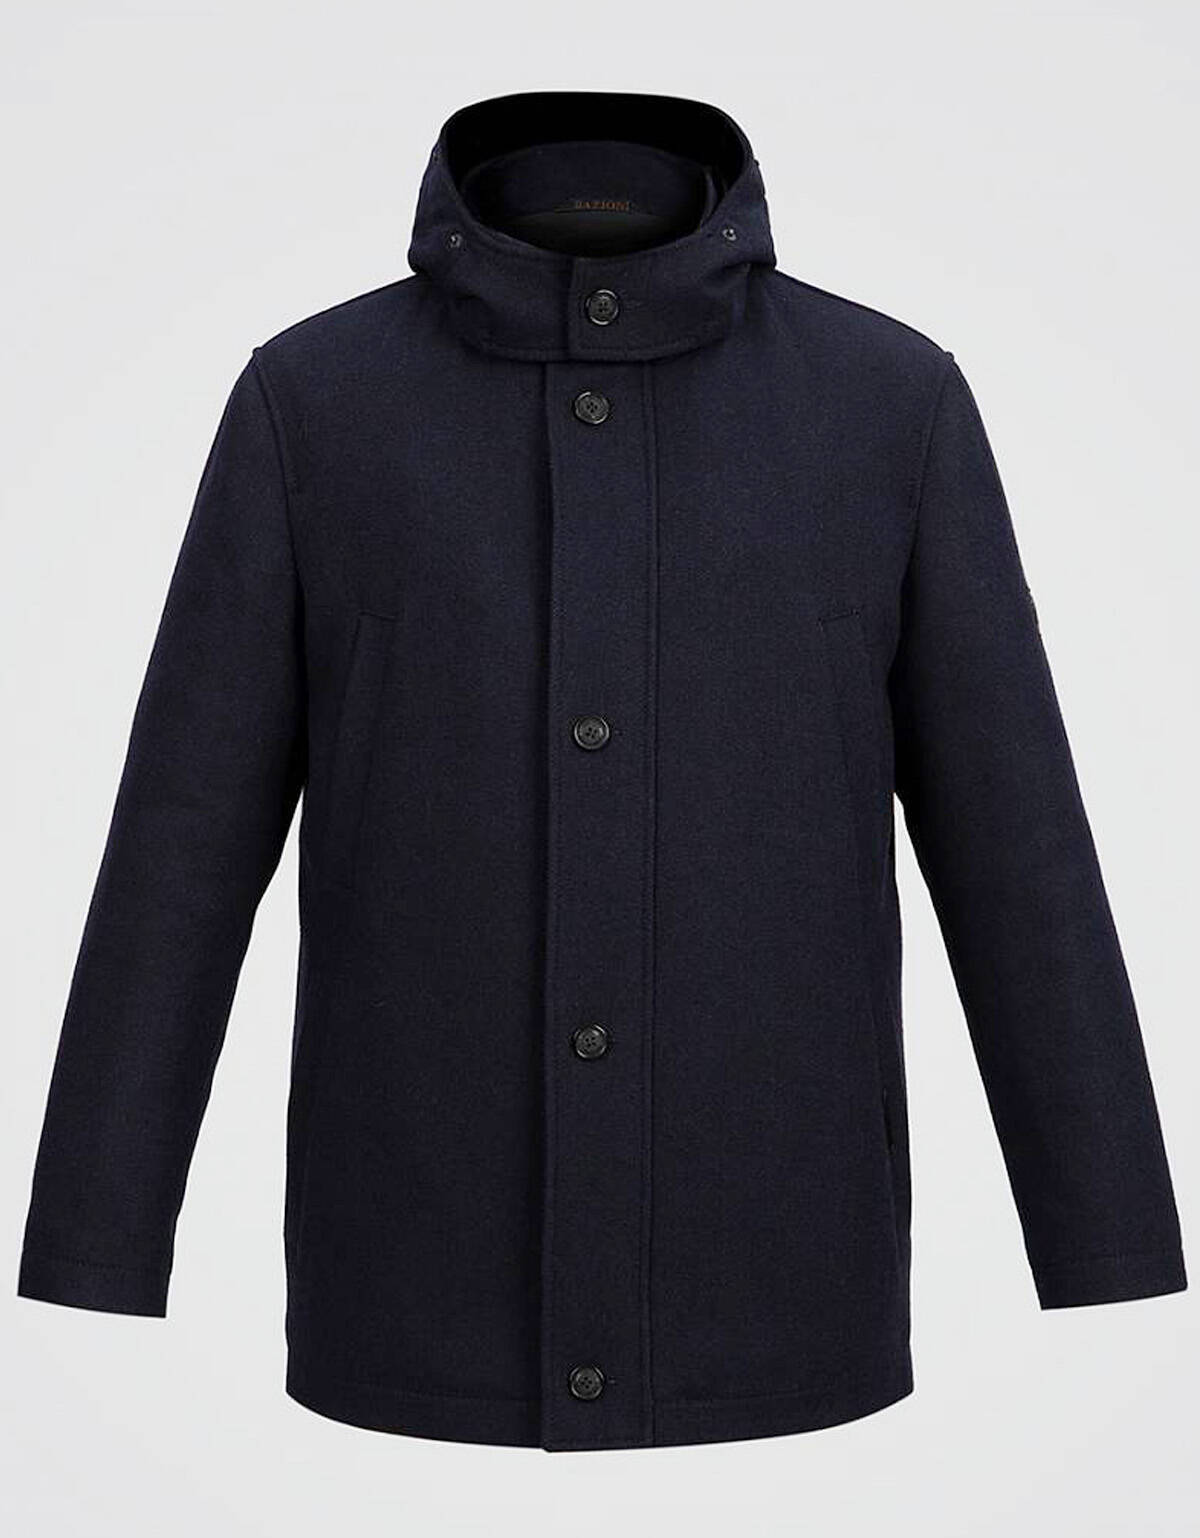 Пальто-парка утепленное с капюшоном, Classic fit | купить в интернет-магазине Olymp-Men